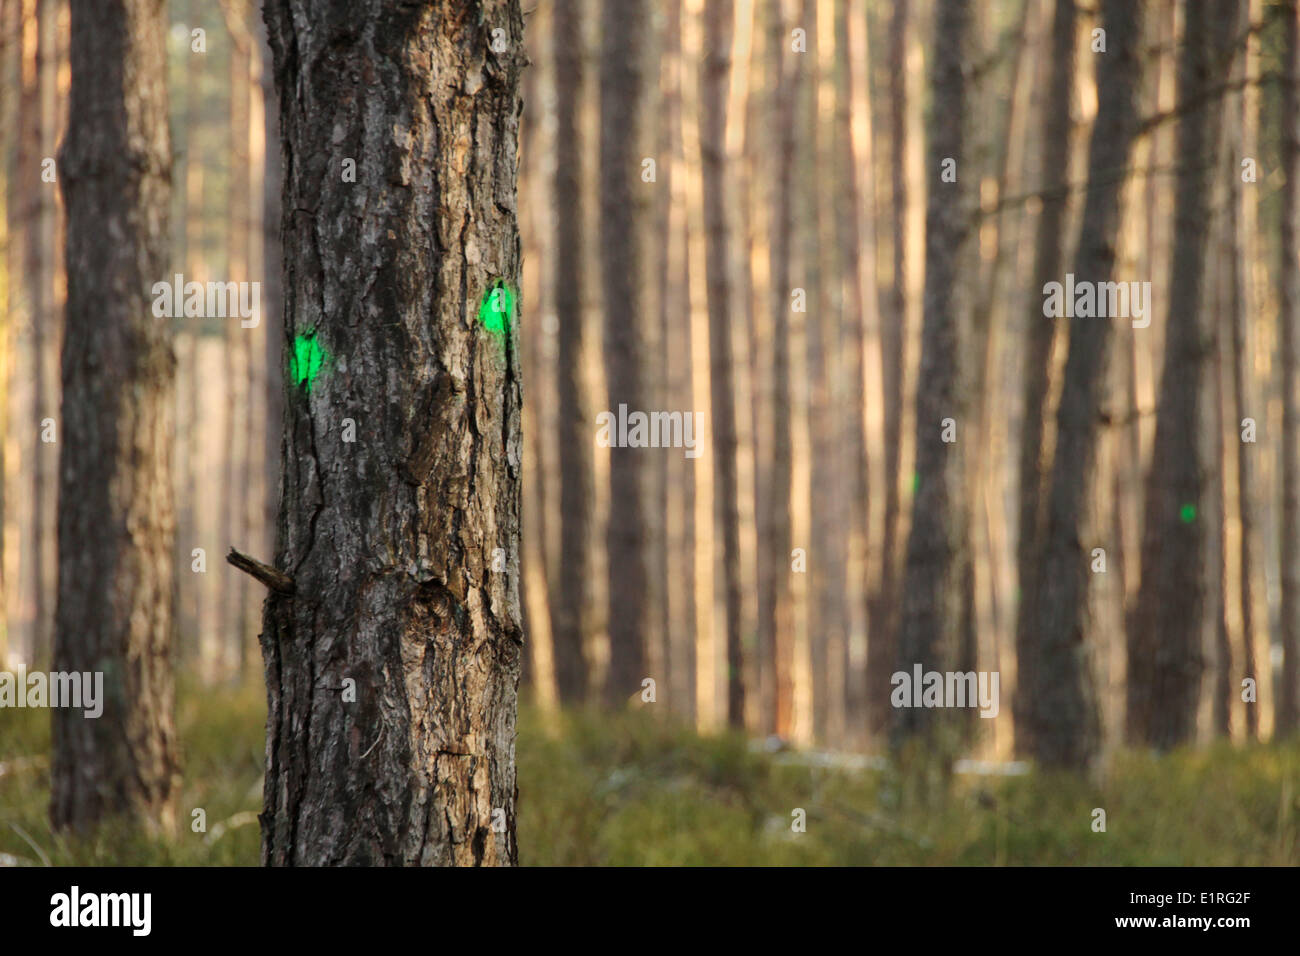 Punti Verdi sugli alberi che verrà tagliato a breve, per rendere la foresta sana. Foto Stock